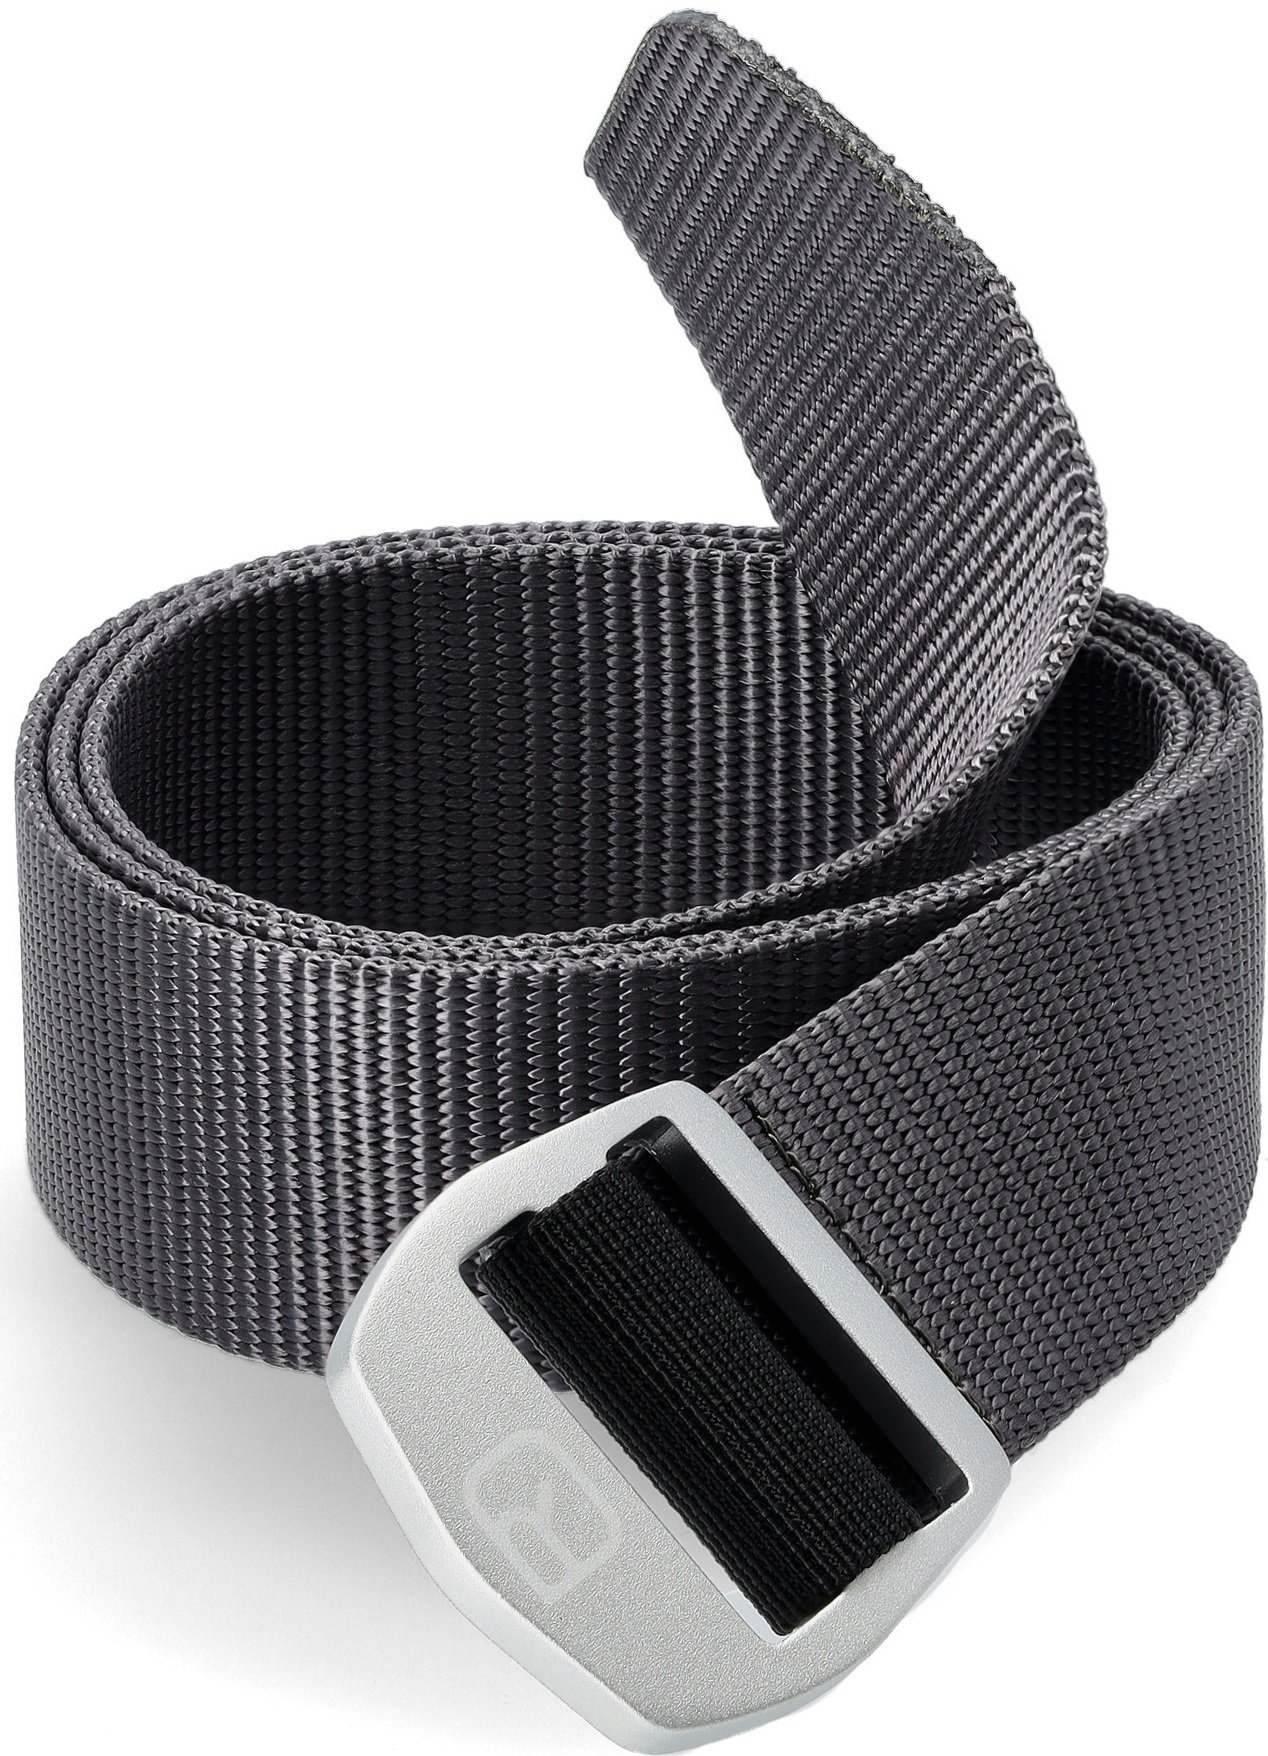 Ремень Ortovox Strong Belt black steel 110 черный фото 4